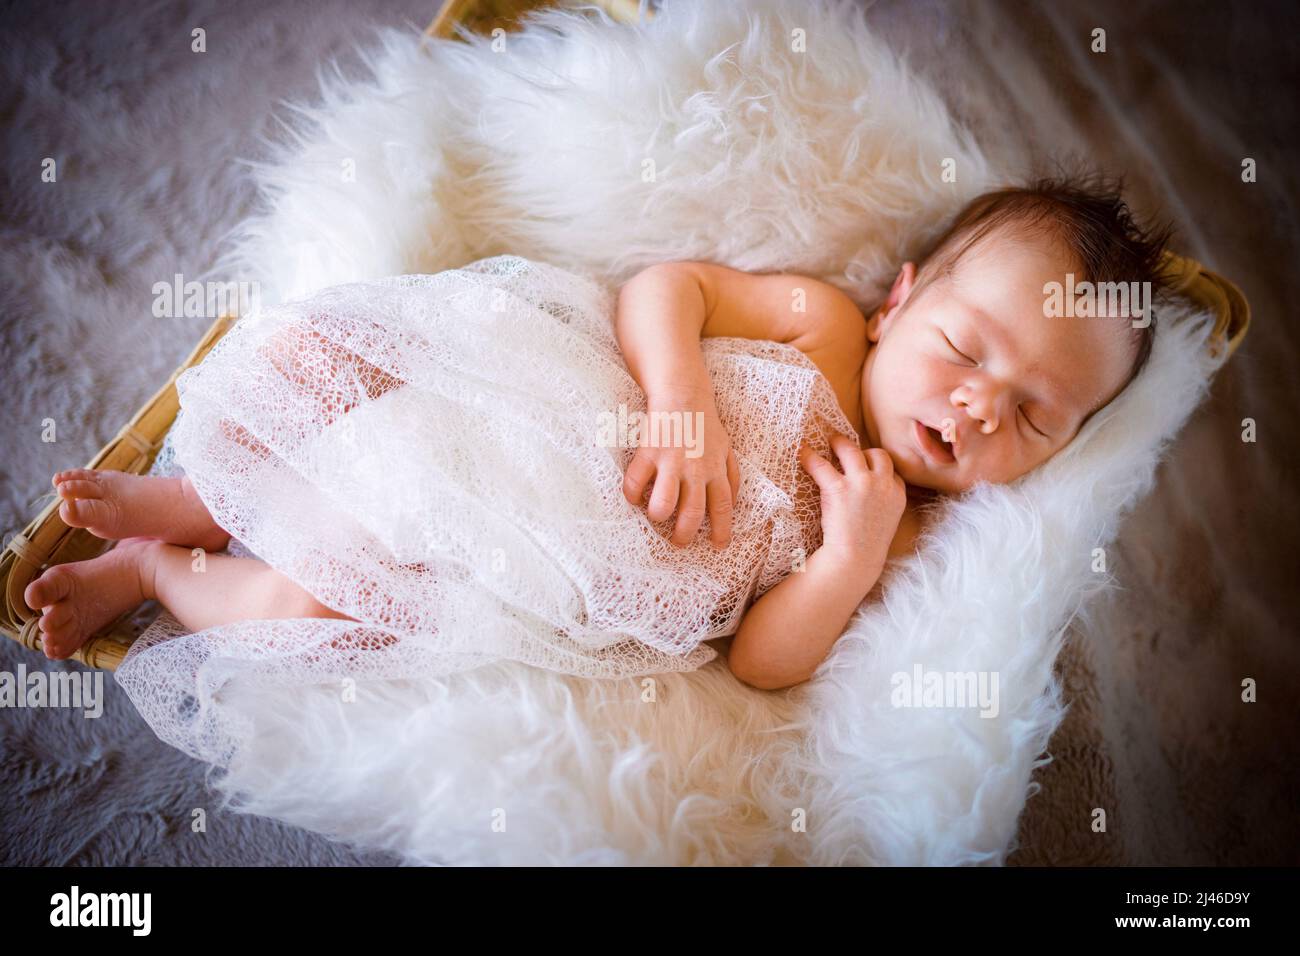 Foto de stock gratuita sobre adorable, bebé, bebé sesión de fotos